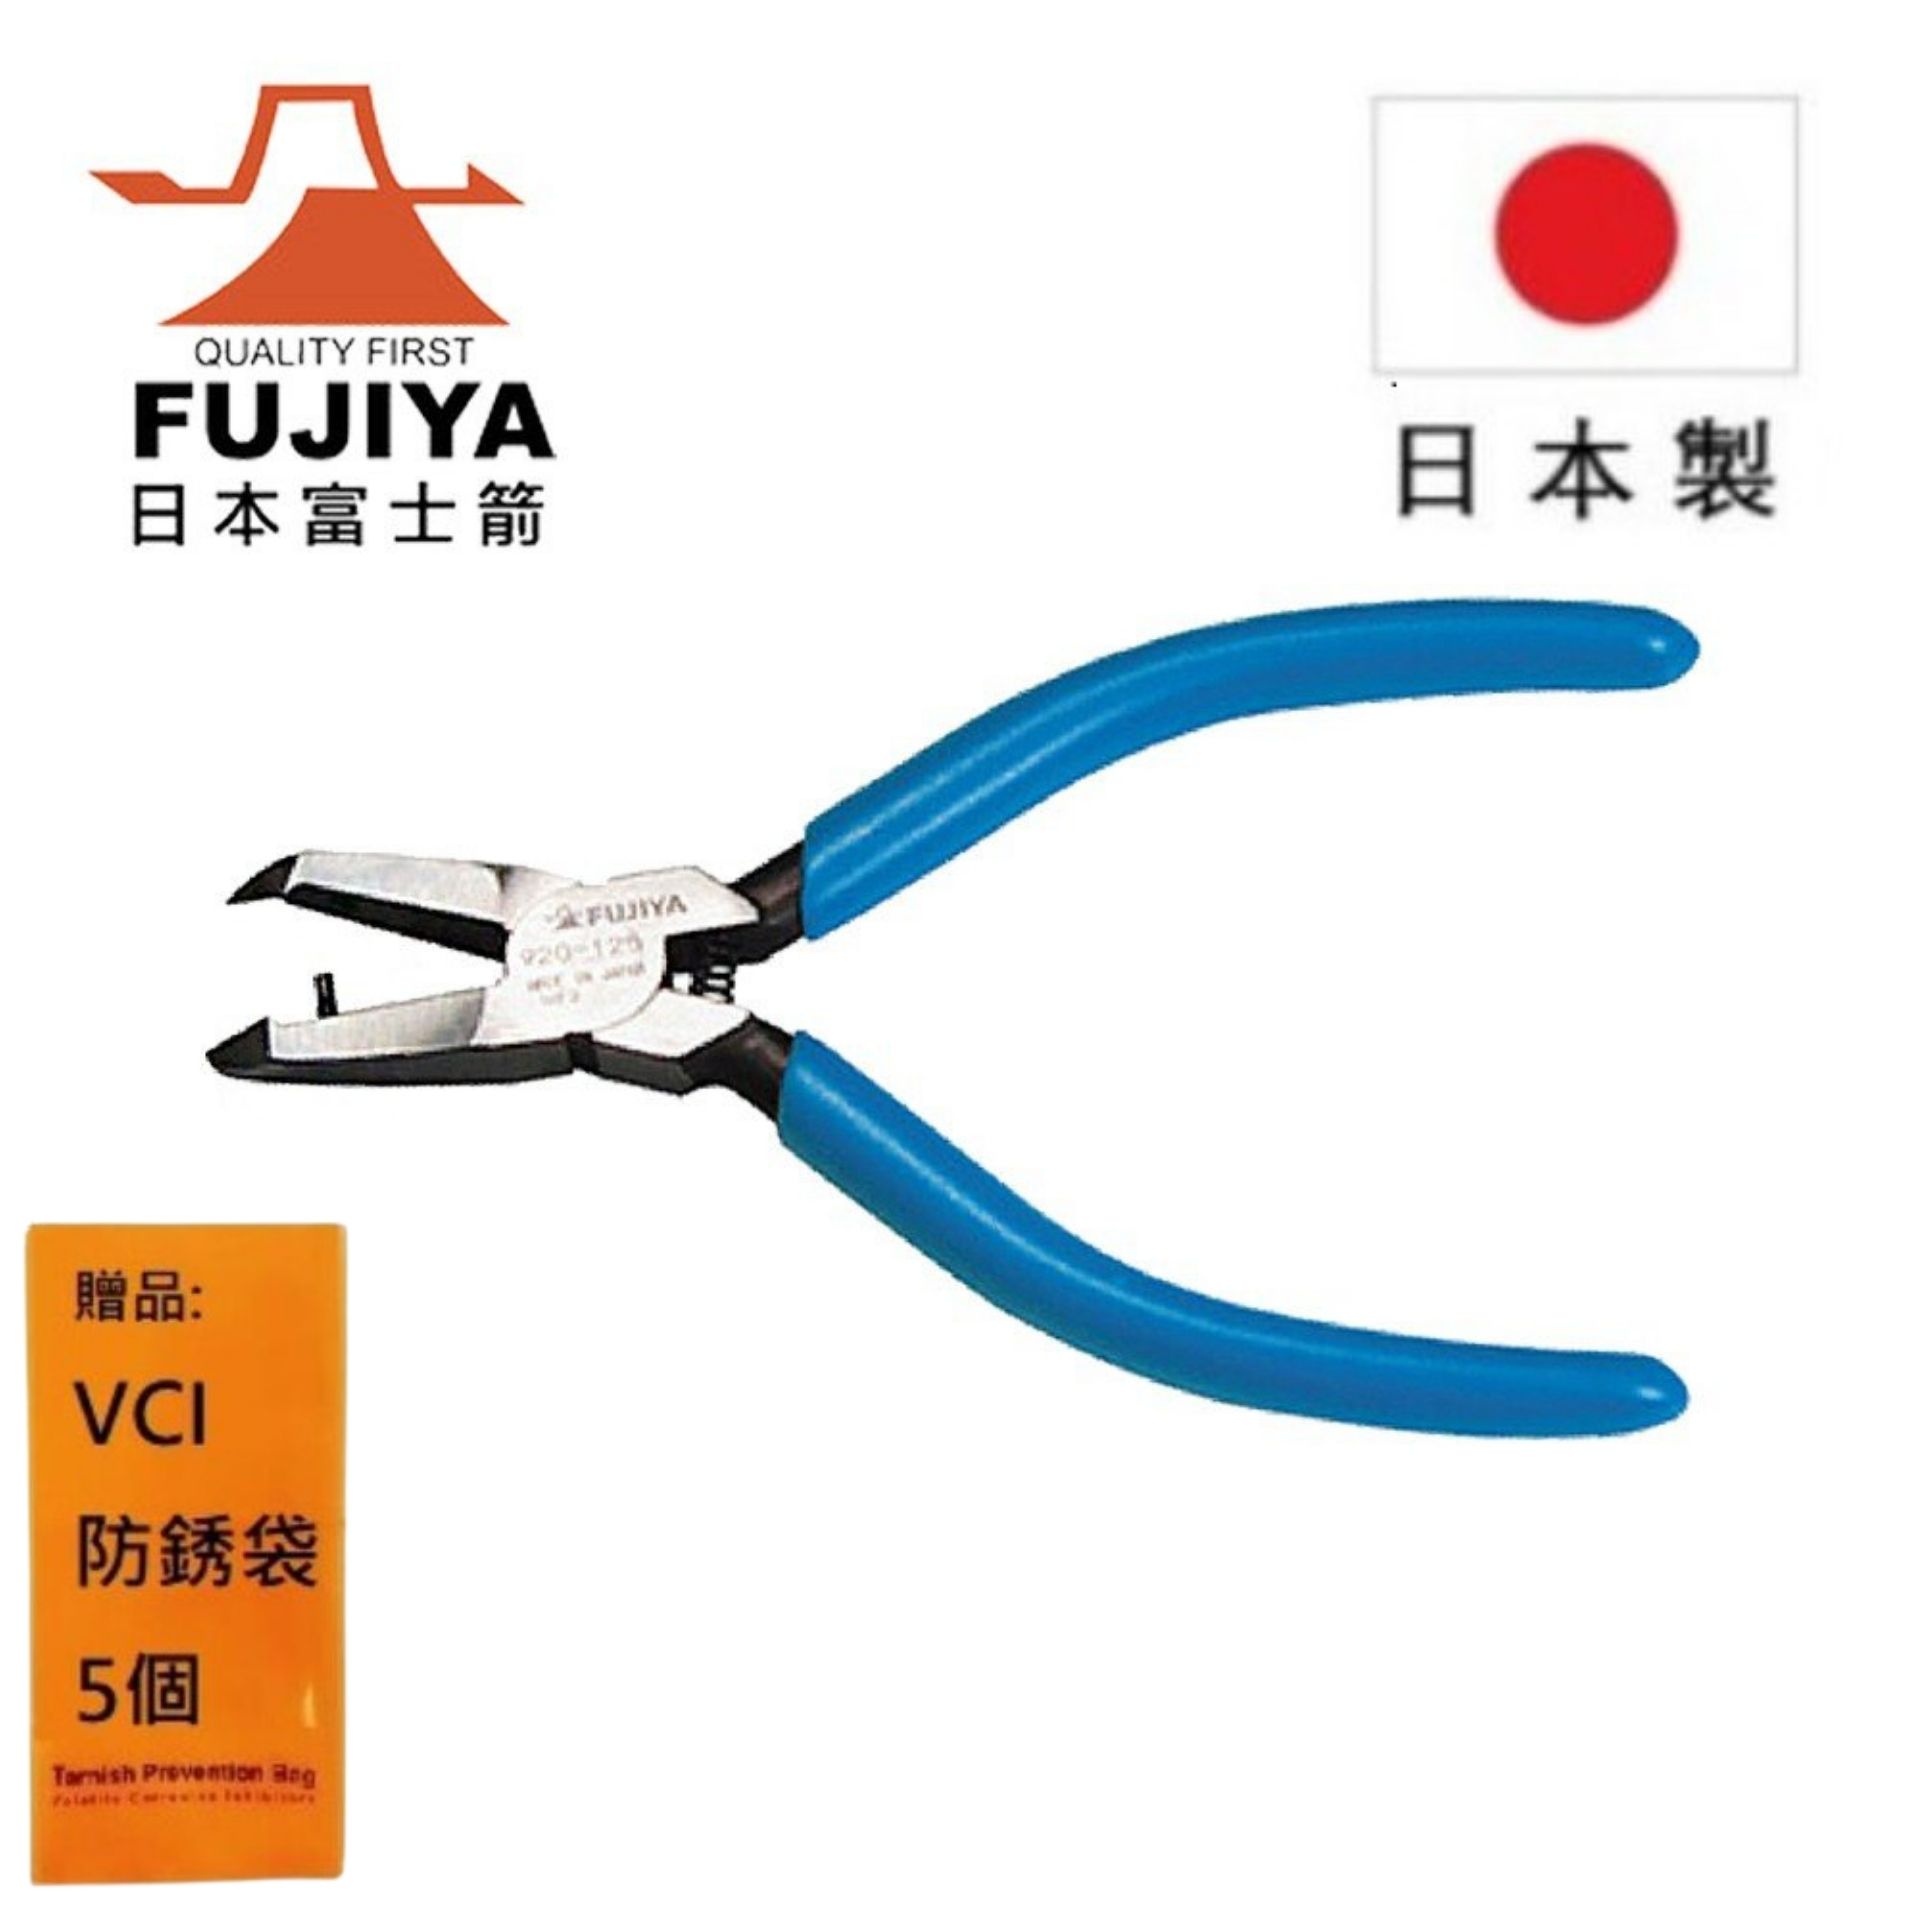 【日本Fujiya富士箭】 小斜刃塑膠斜口鉗 125mm 920-125